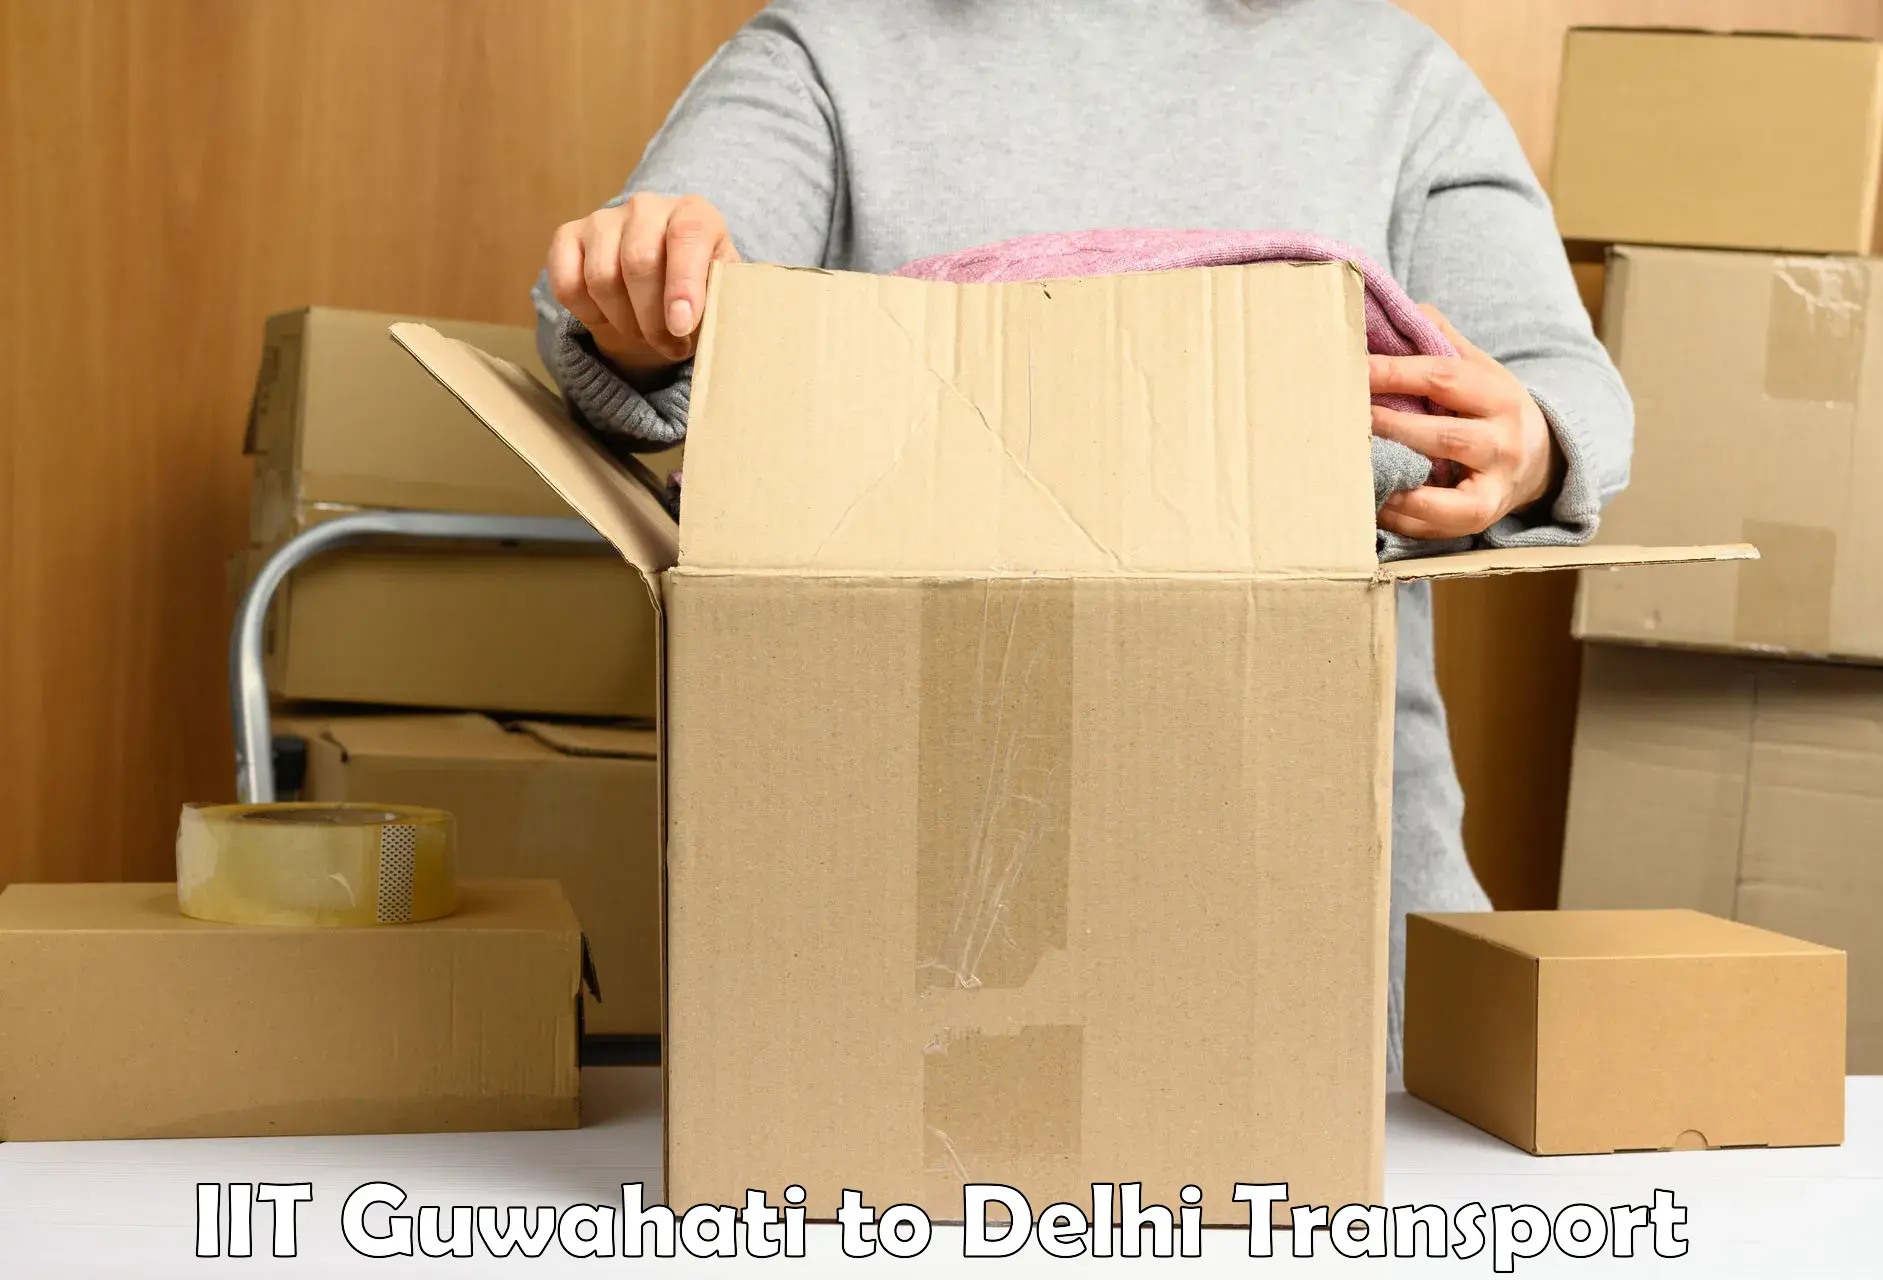 Cargo transport services IIT Guwahati to NIT Delhi